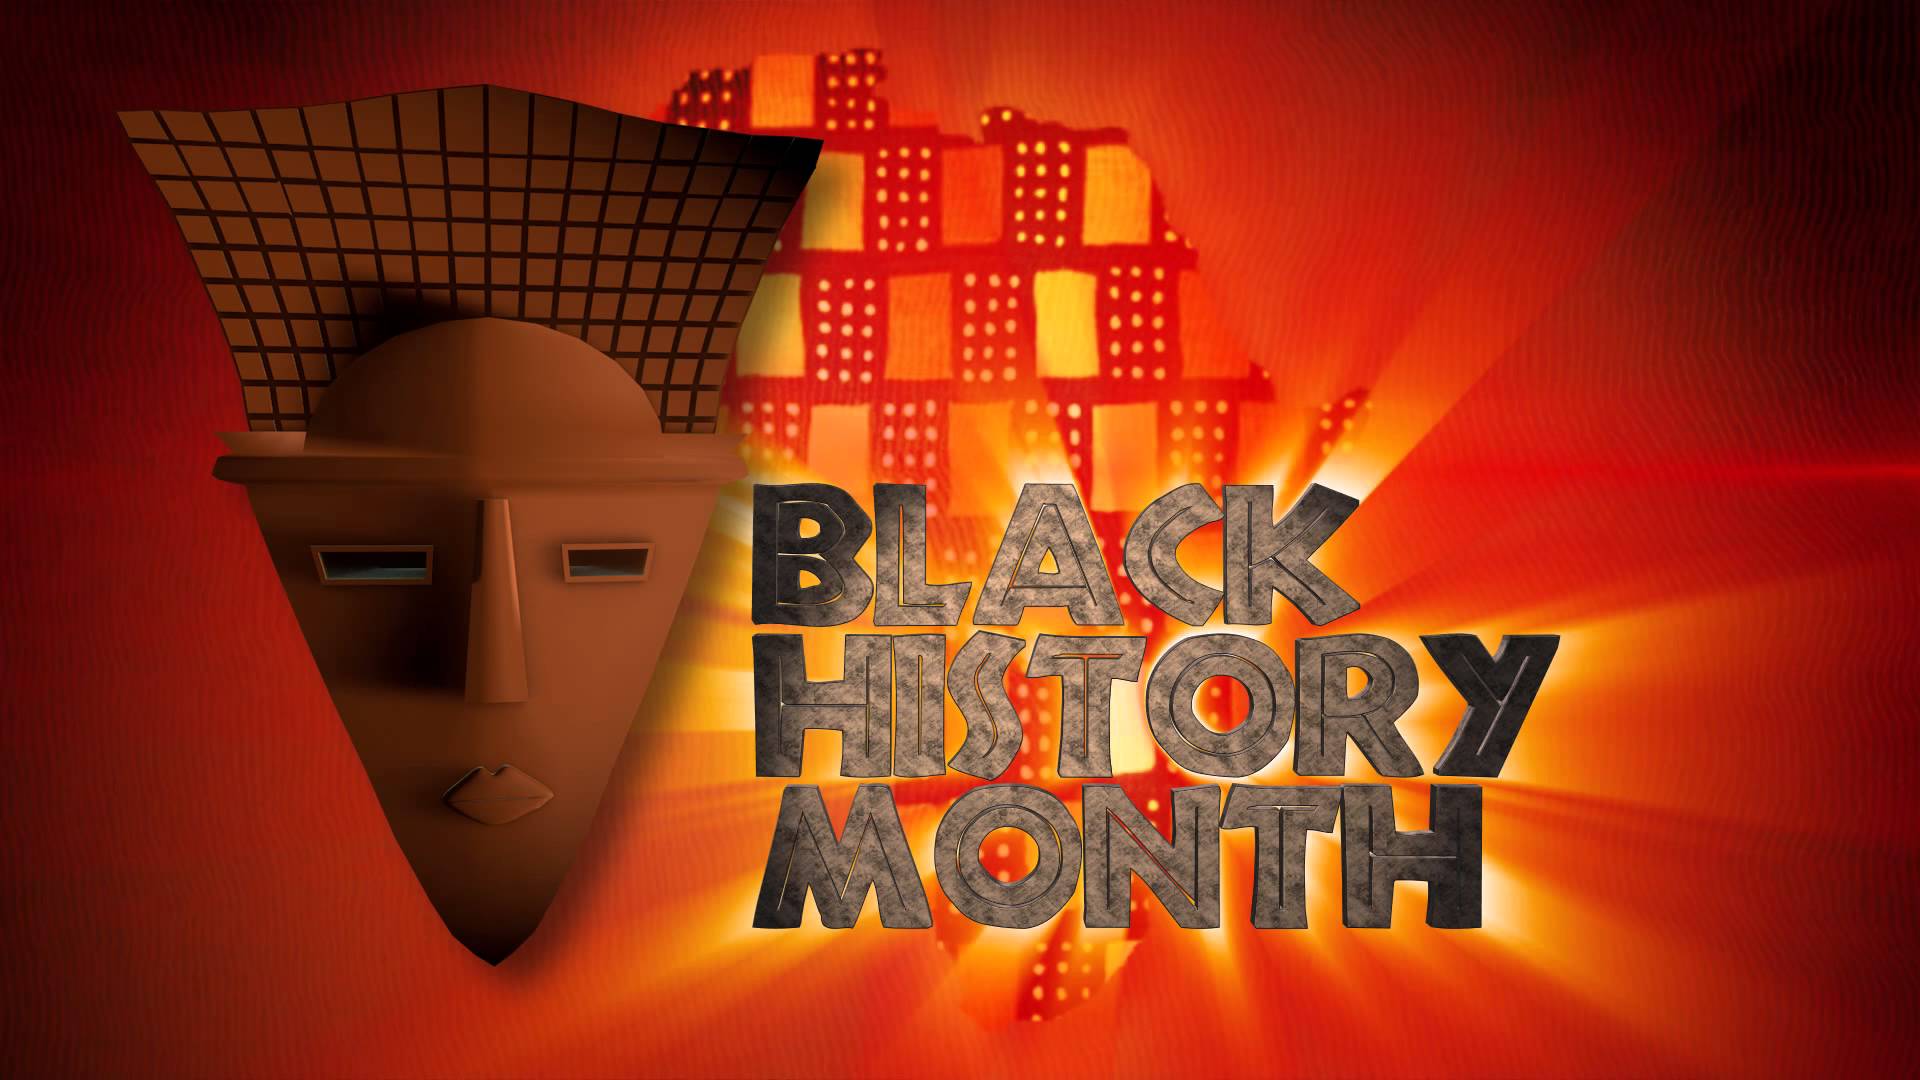 Black History Month Desktop Wallpaper .wallpaperafari.com